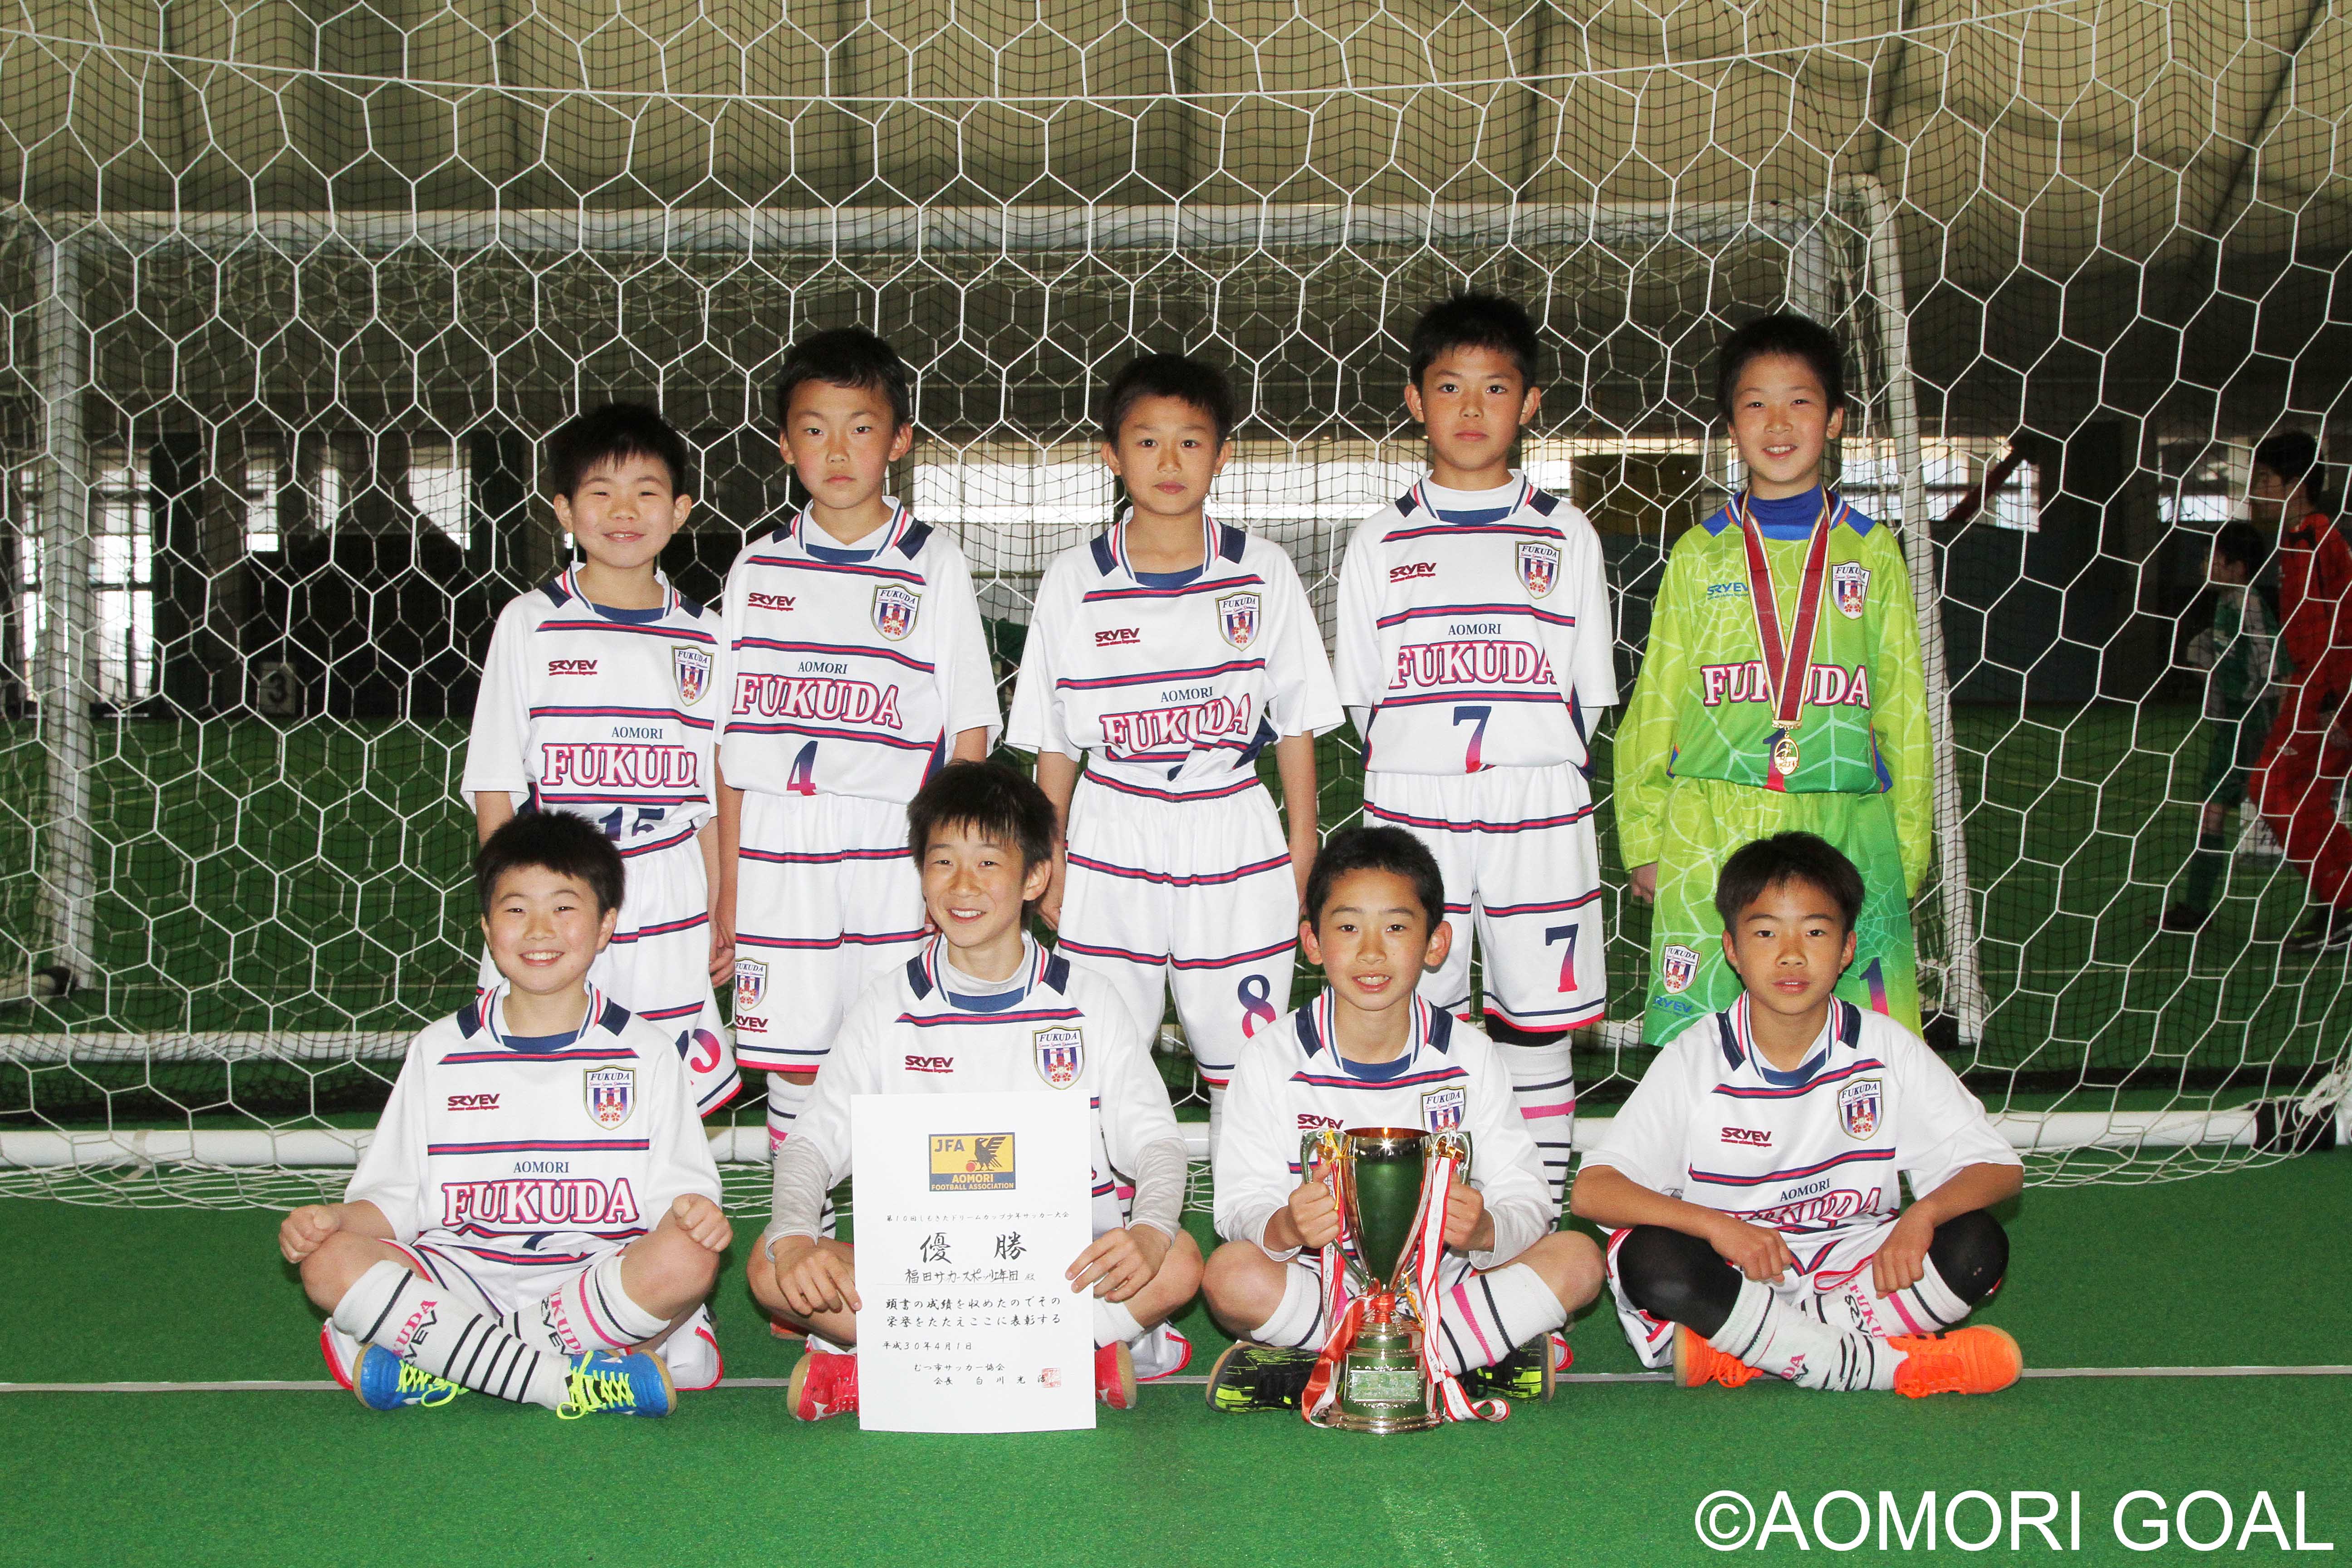 第10回 しもきたドリームカップ少年サッカー大会 結果 4種 小学生 大会情報 青森ゴール Aomori Goal 青森県サッカー フットサルマガジン